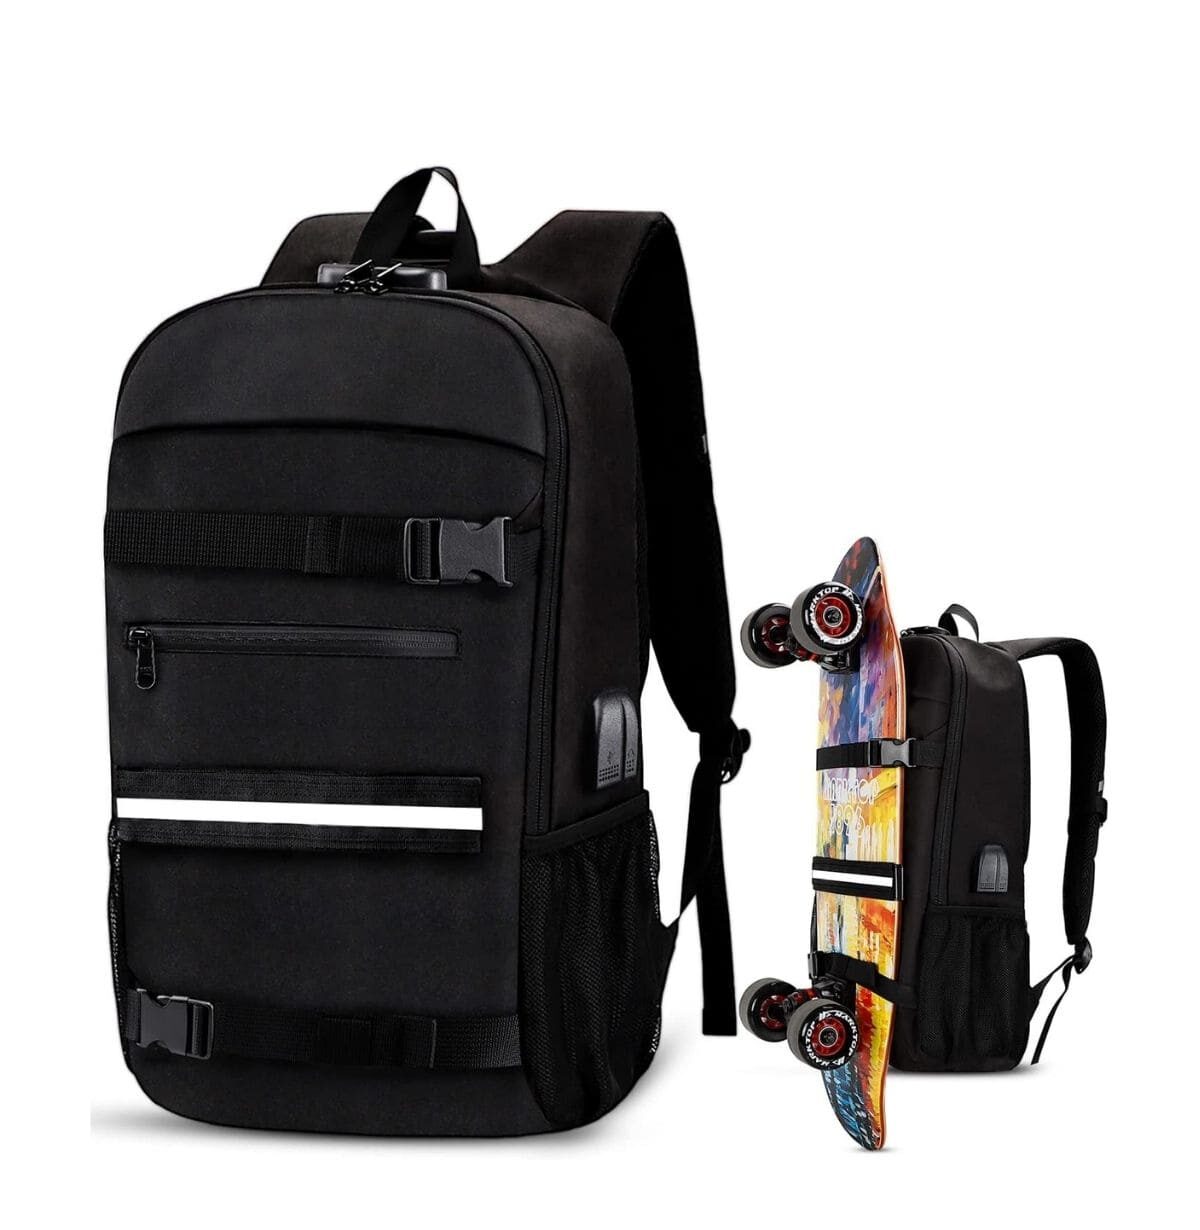 Best backpacks for skateboarders